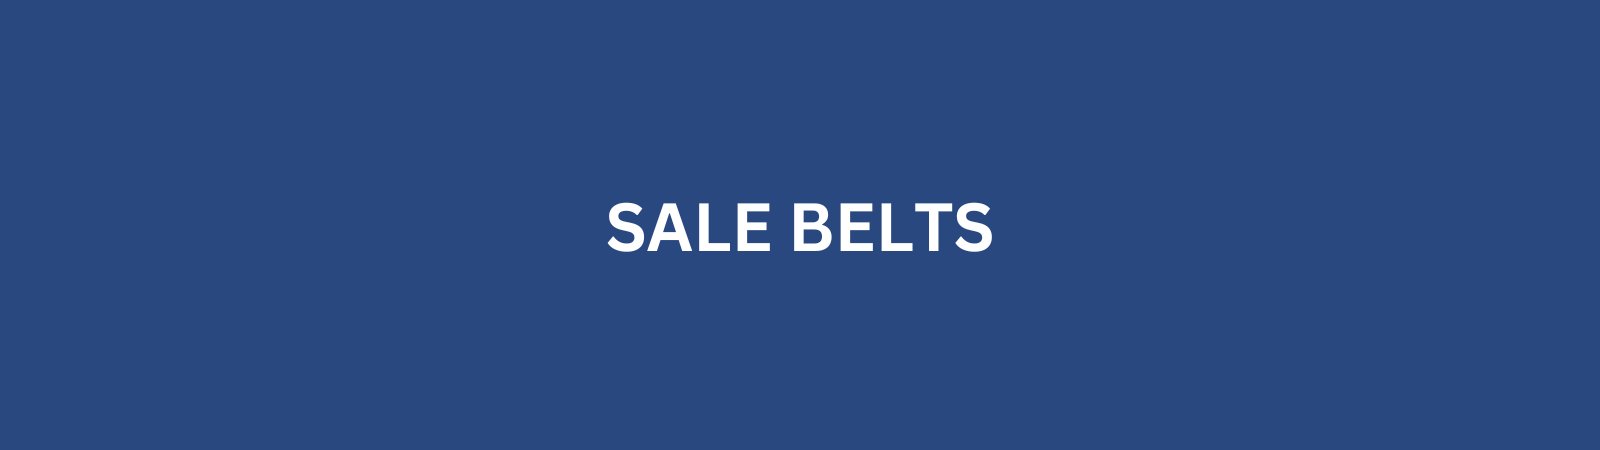 Sale Belts